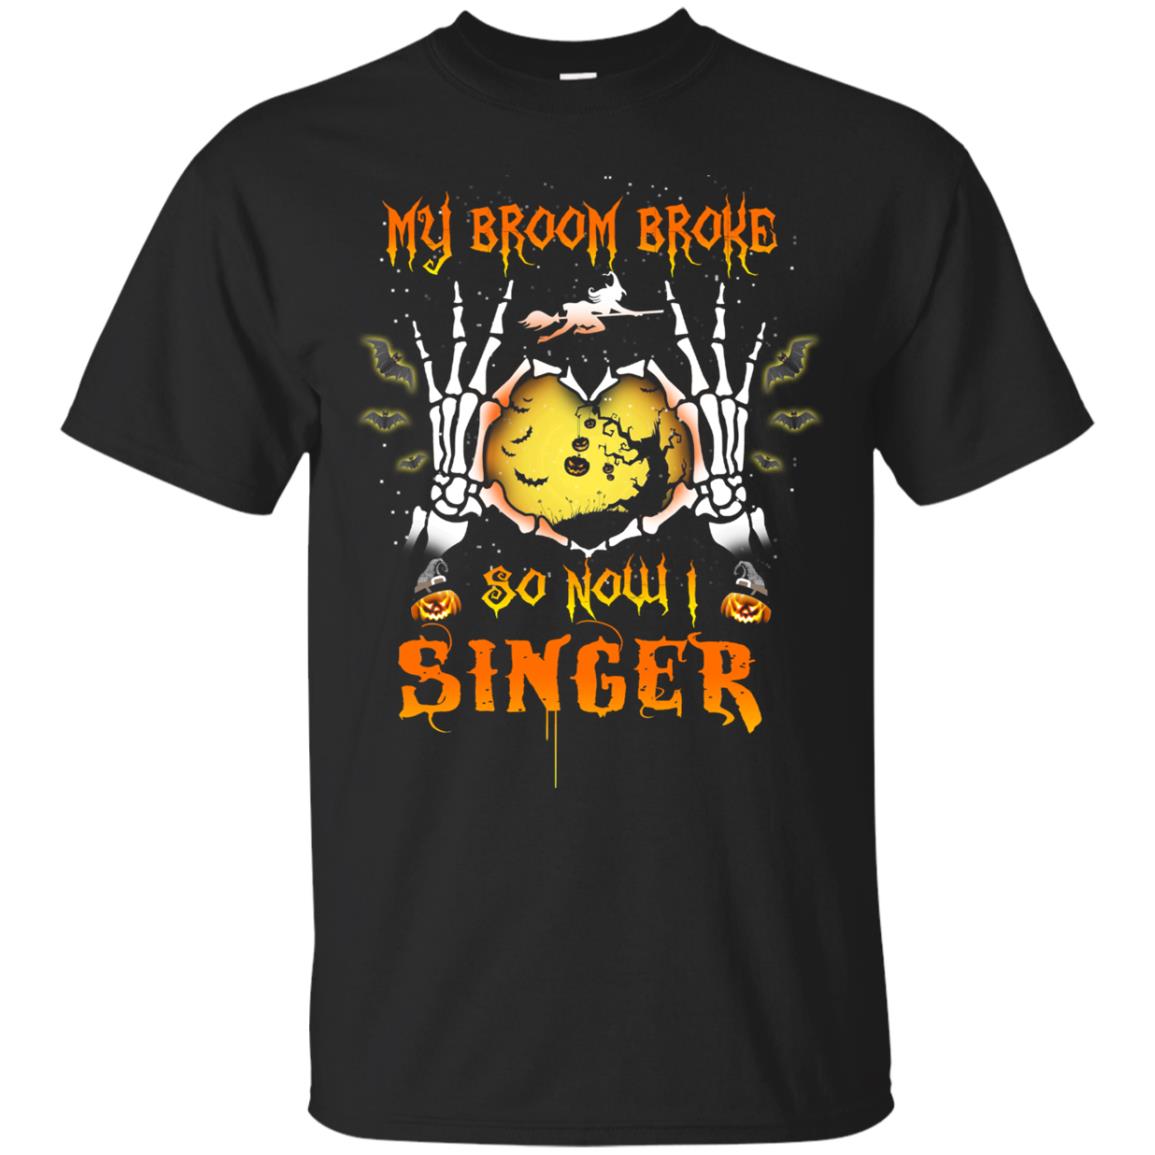 My broom broke so now I Singer shirt, hoodie, tank